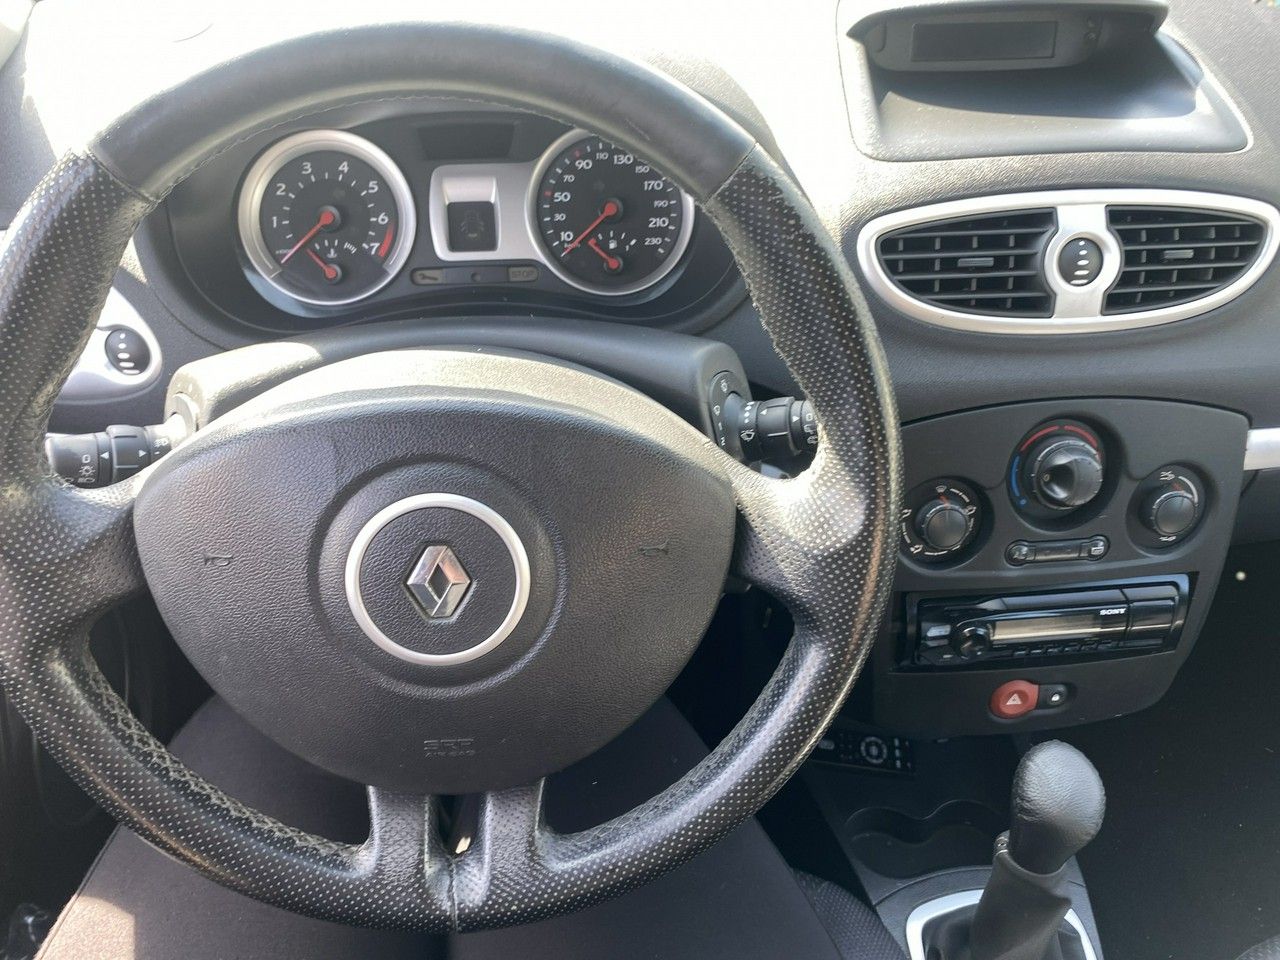 Renault Clio 1.6 benzyna - 2006r - klimatyzacja zamiana